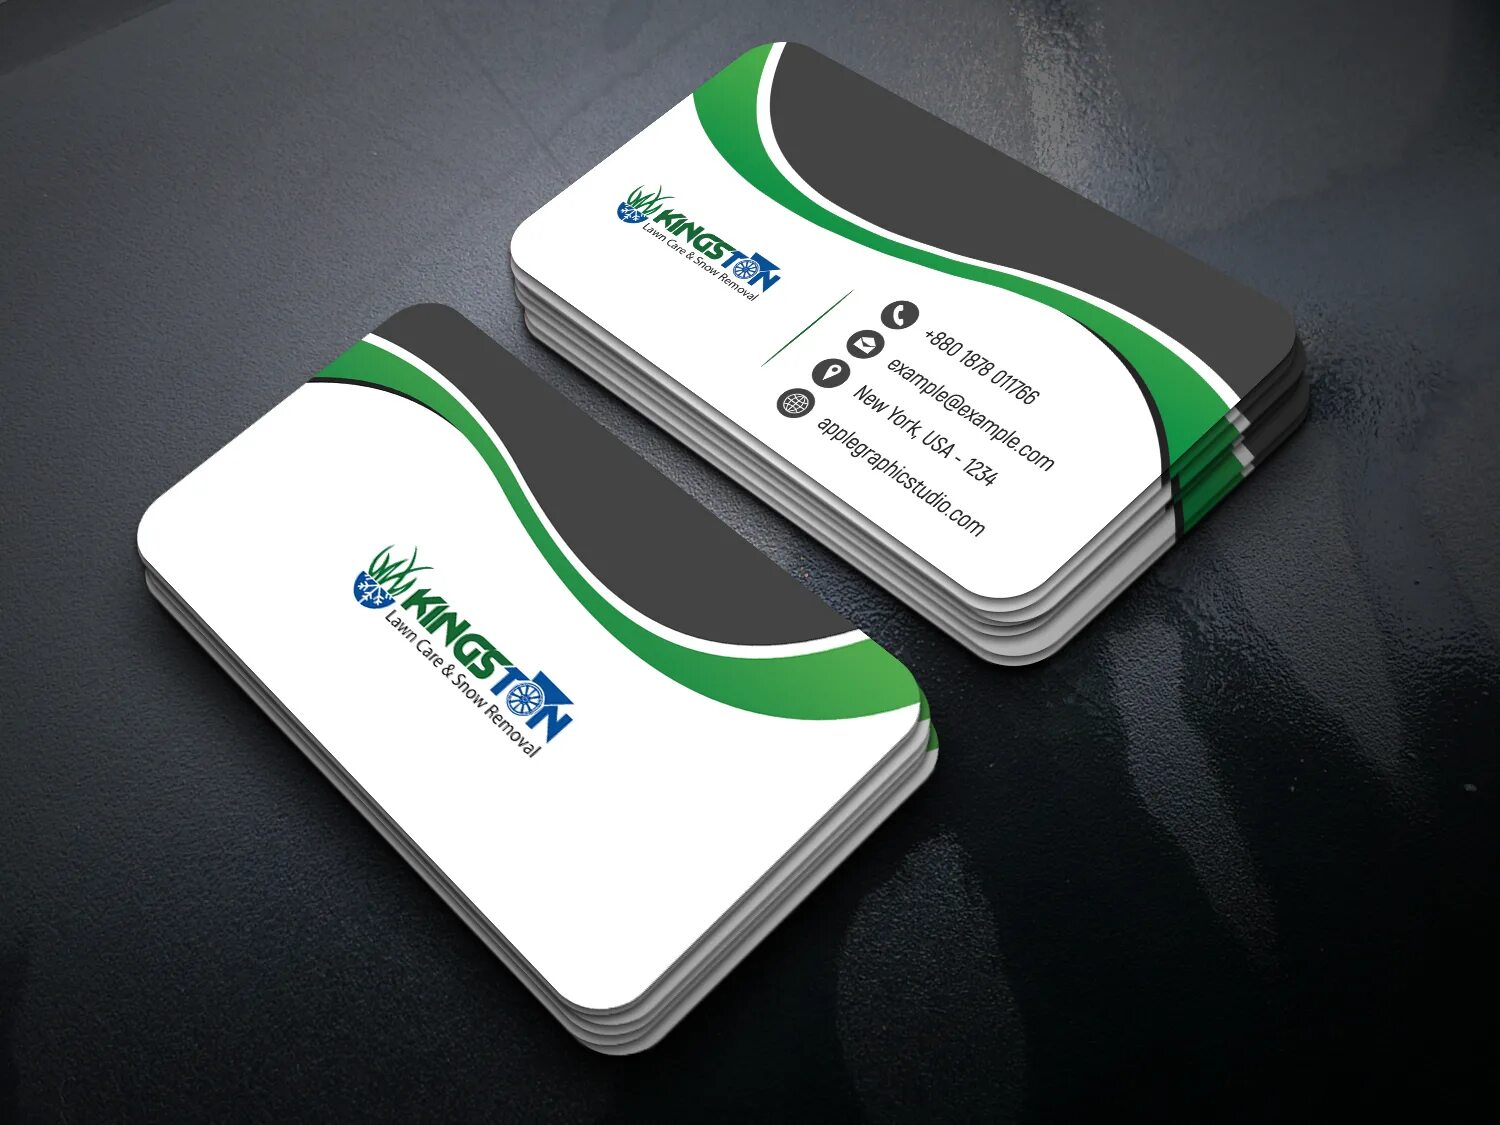 Print cards. Овальные визитки. Business Card. Визитные карточки дизайн. Professional Business Card Design.